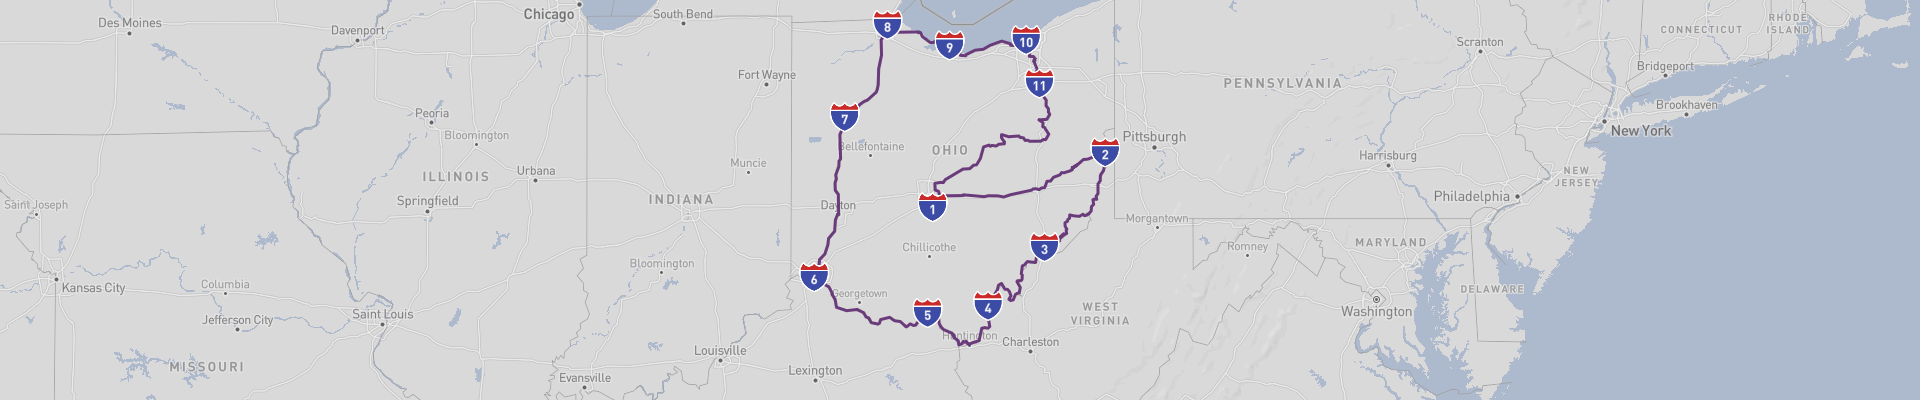 Ohio Road Trip